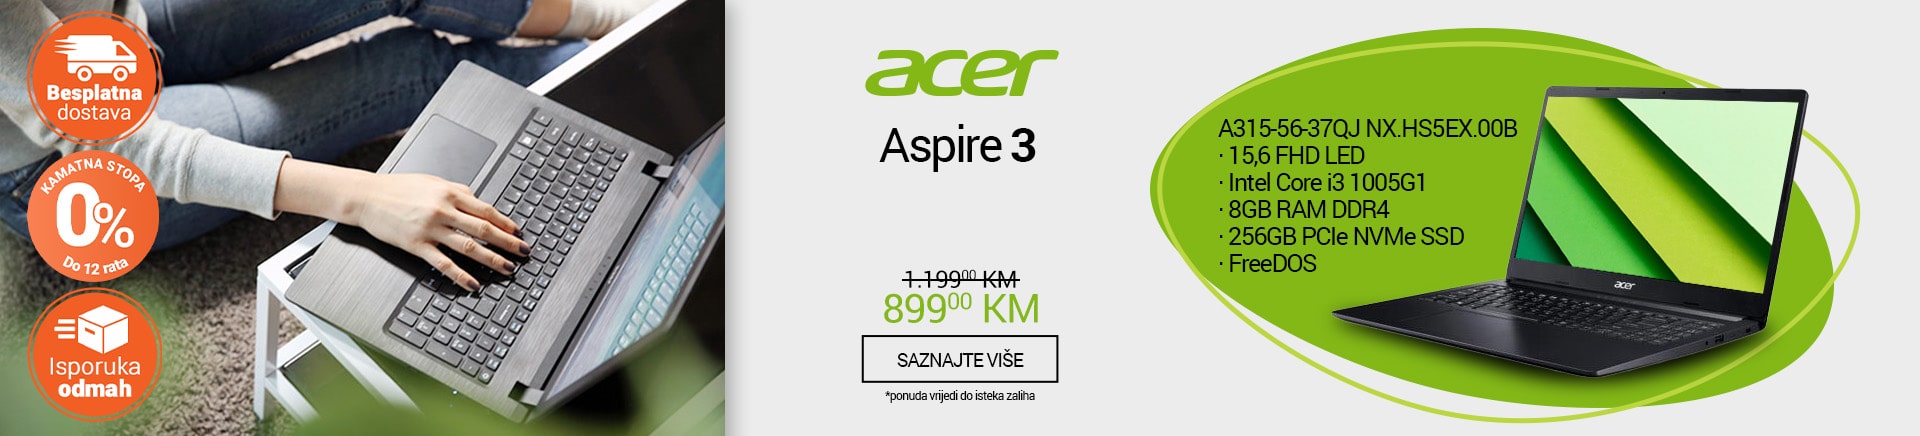 BA~Acer Aspire 3 MOBILE 380 X 436-min.jpg